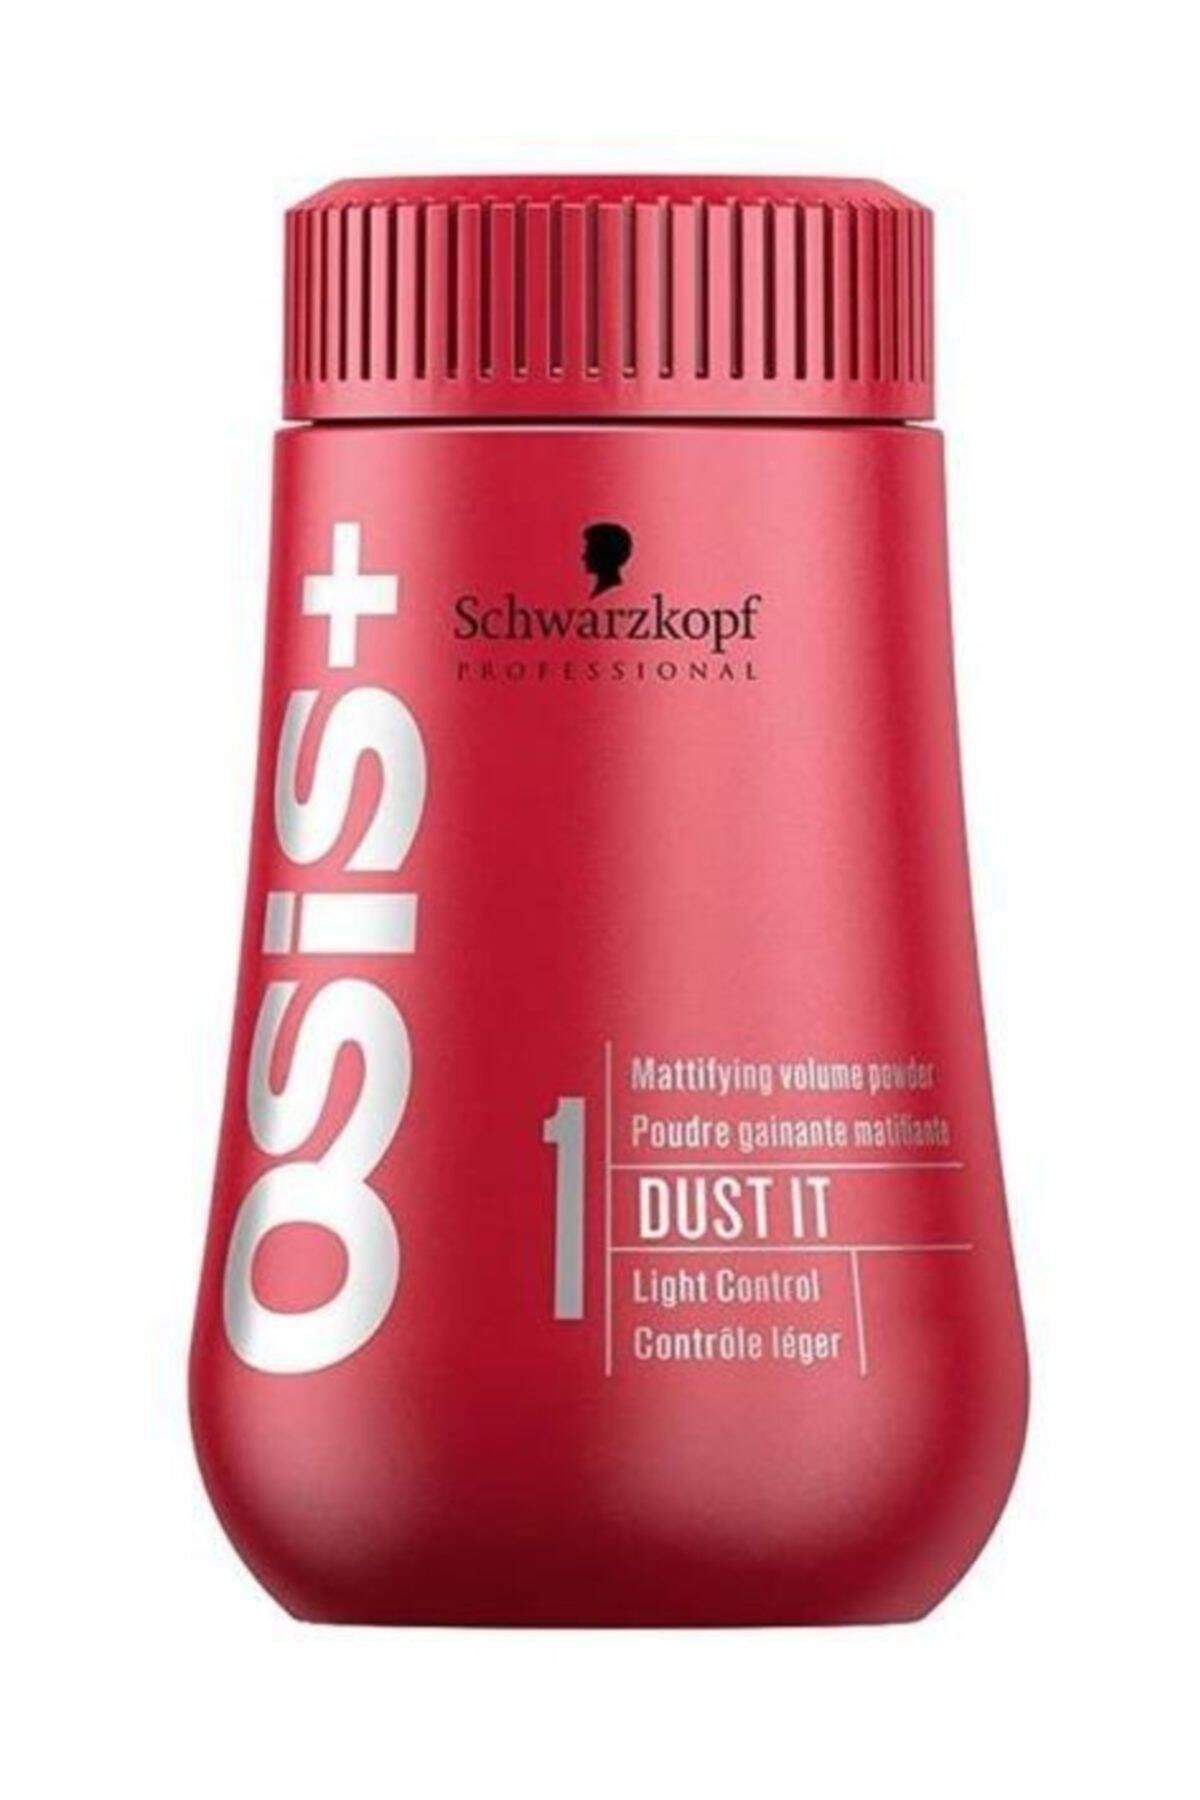 Osis Hacim Veren Saç Bakım Pudrası - 24h Dust It Powder 10 G